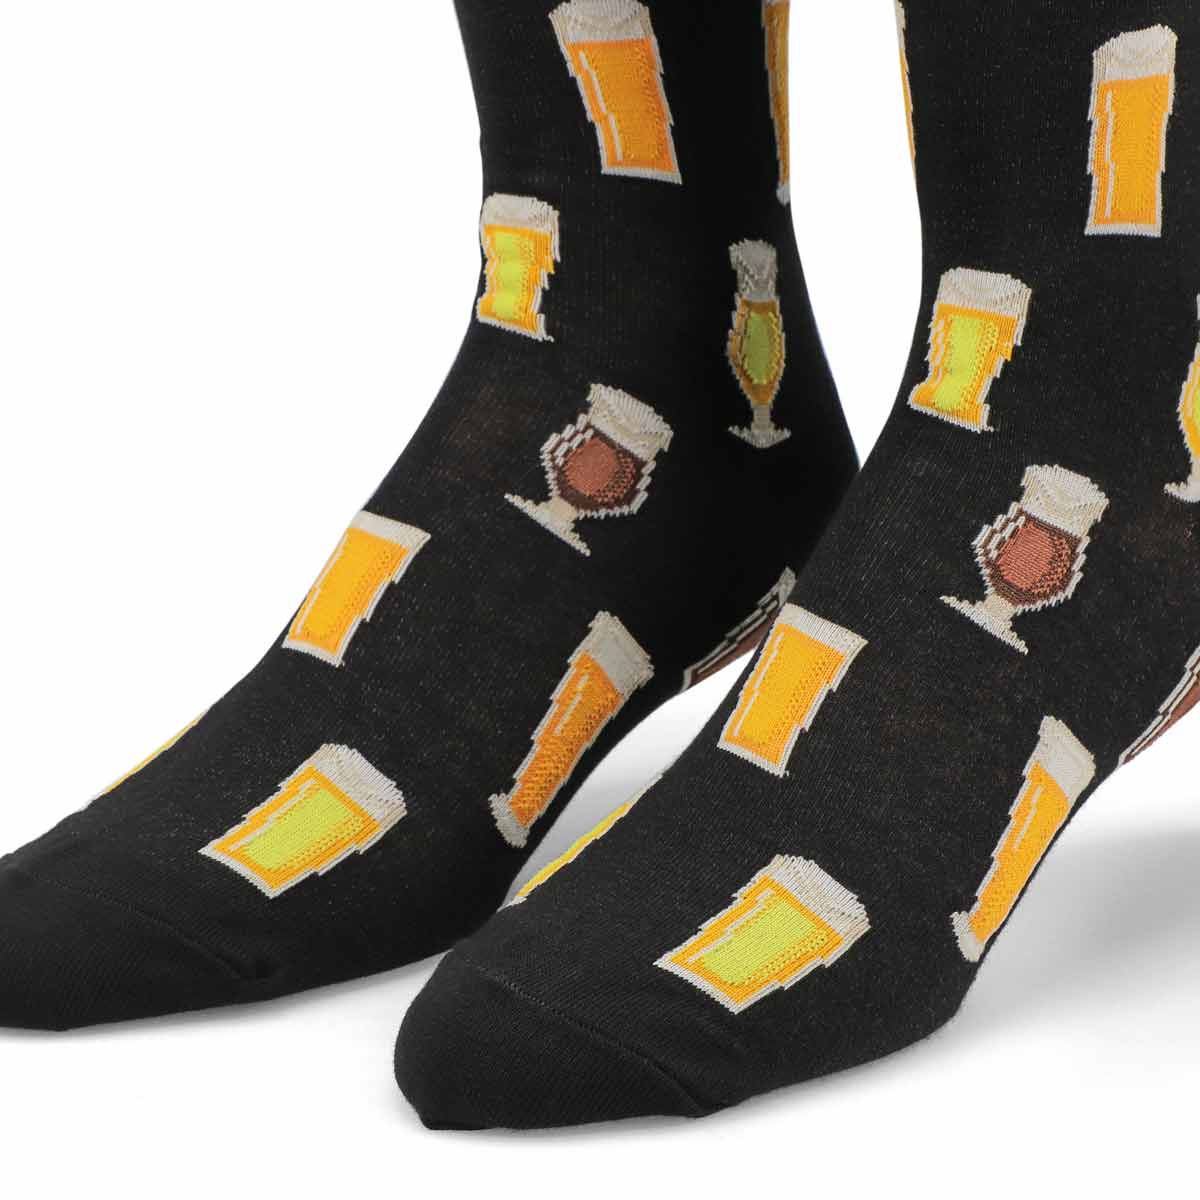 Men's Beer Sock - Black Printed